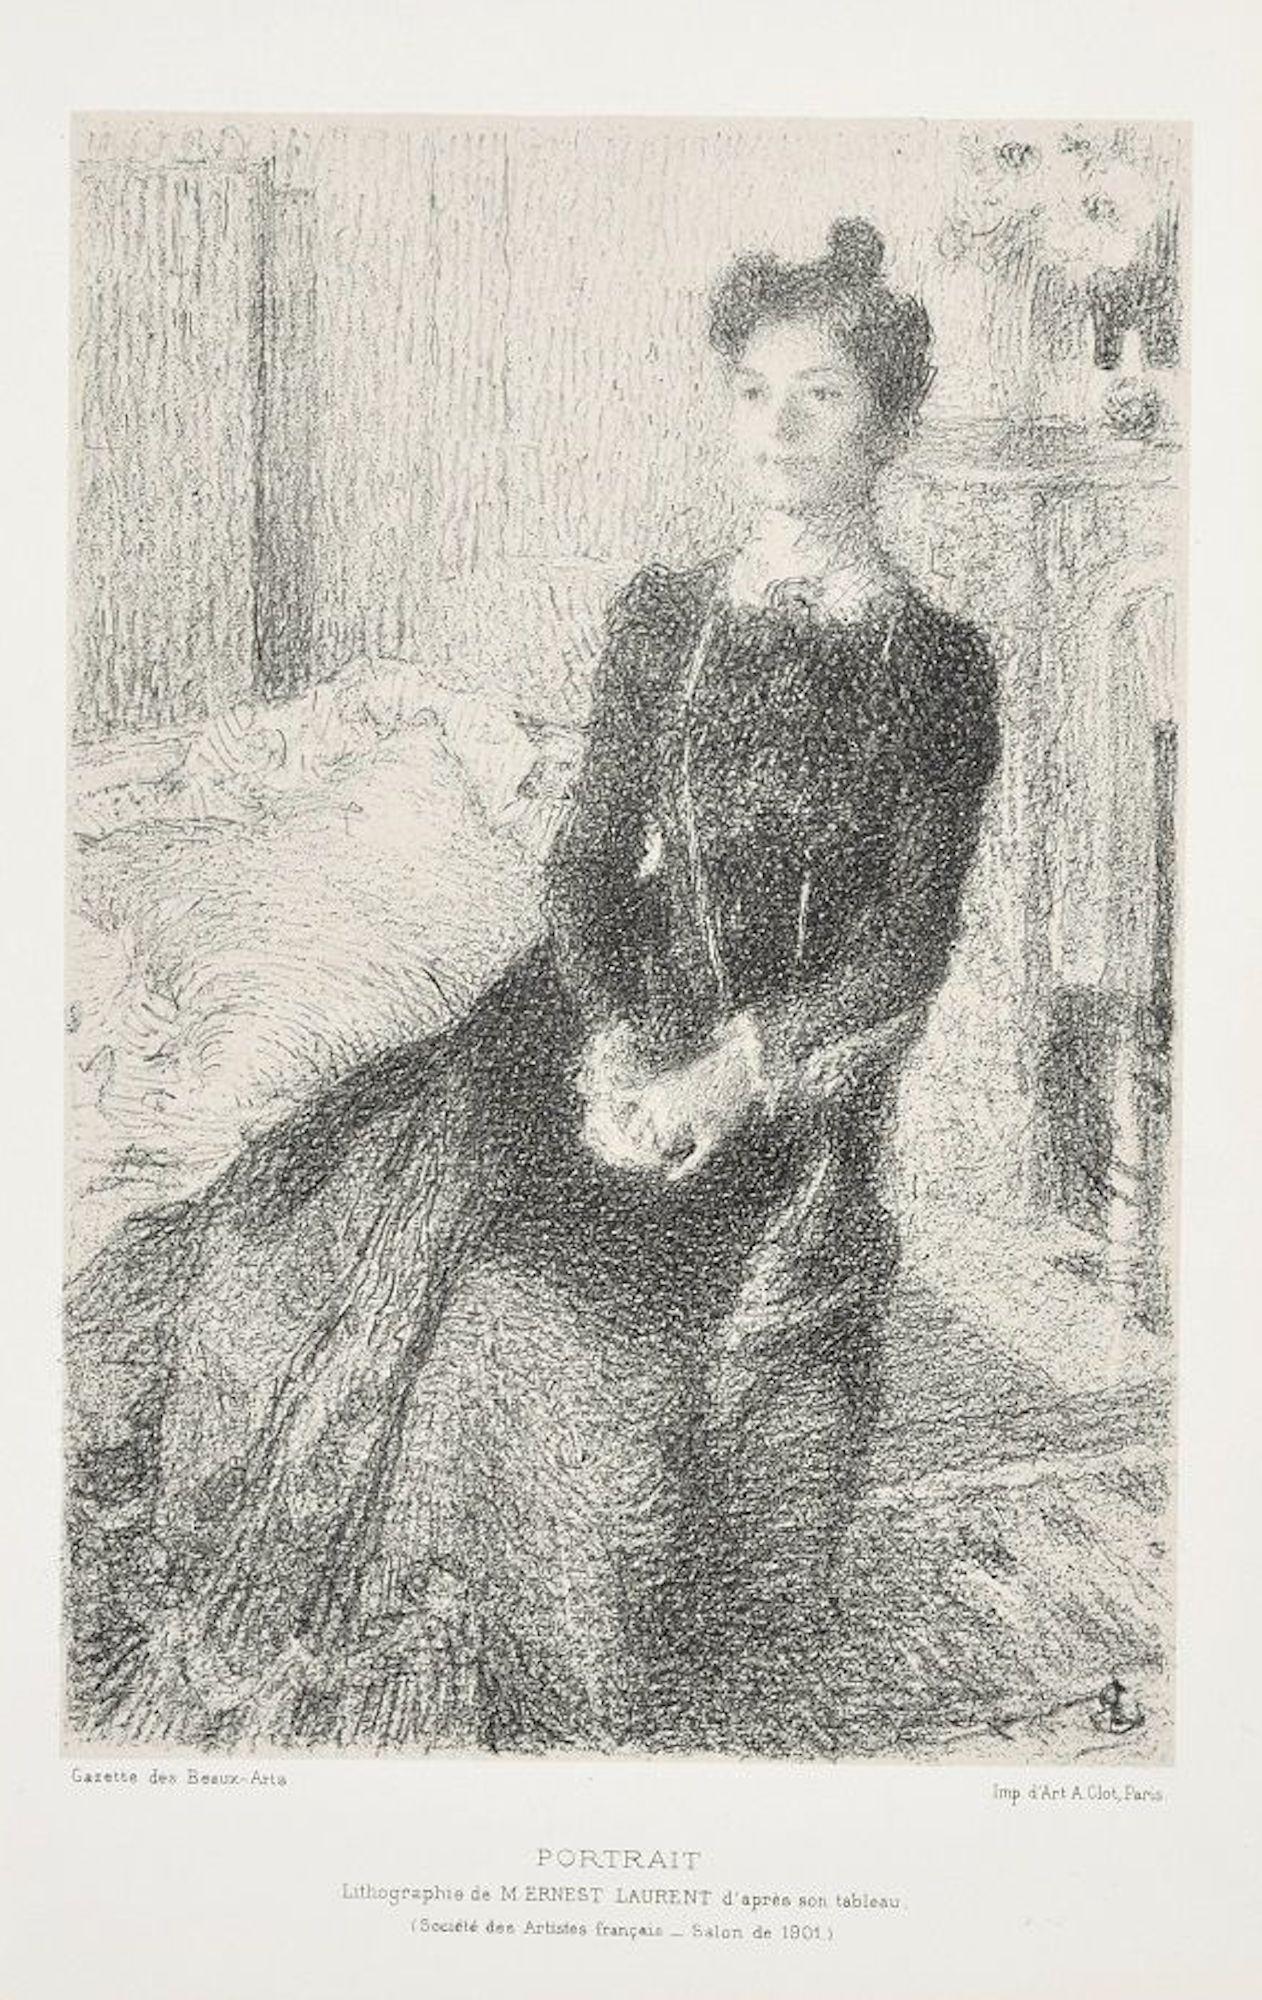 Ernest Laurent Figurative Print - Portrait of Woman - Lithograph by E. Laurent - 1901 ca.